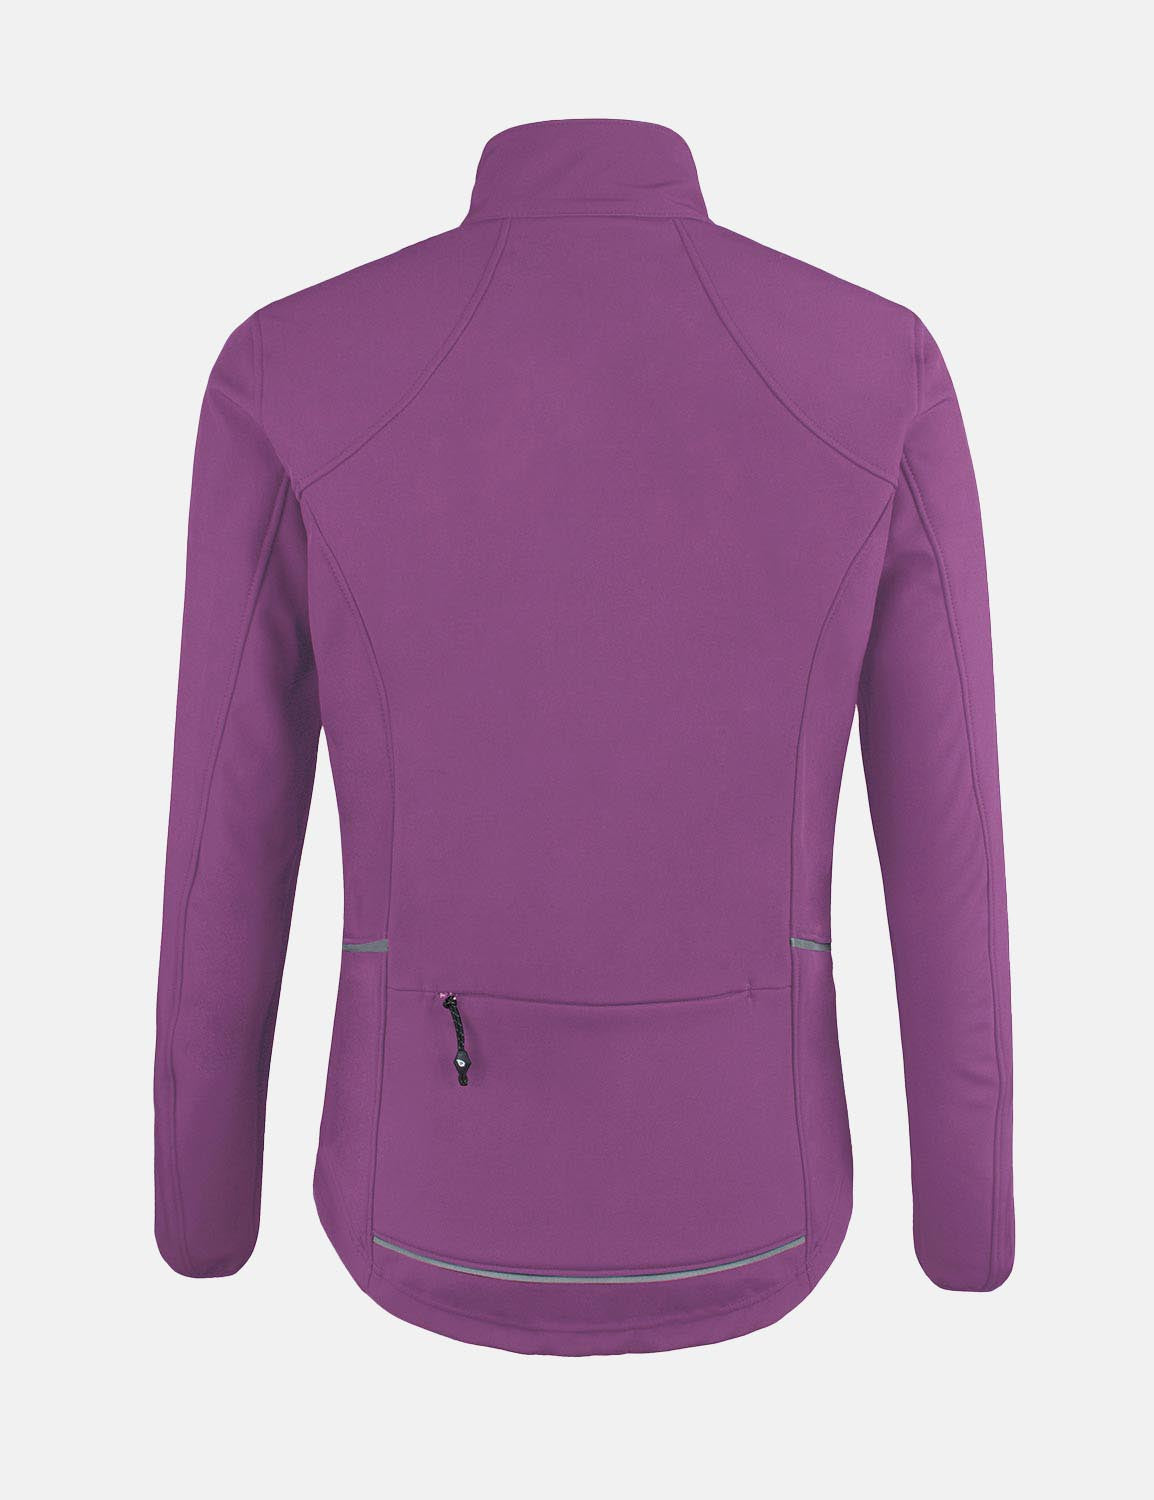 Baleaf Women's Wind- & Waterproof Thermal Long Sleeved Cycling Jacket aaa464 Hyacinth Violet Back